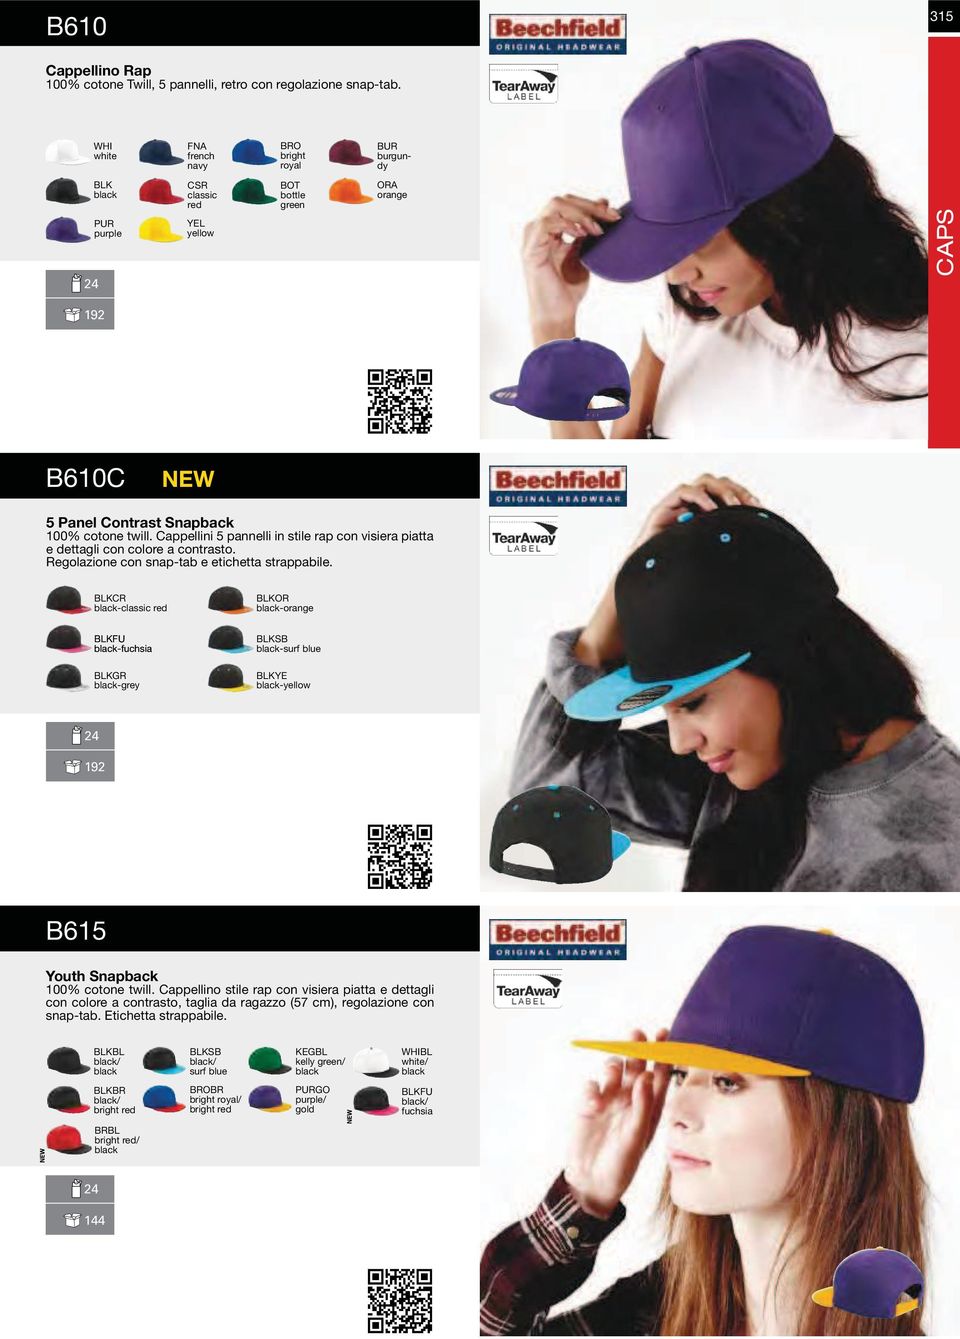 Cappellini 5 pannelli in stile rap con visiera piatta e dettagli con colore a contrasto. Regolazione con snap-tab e etichetta strappabile.